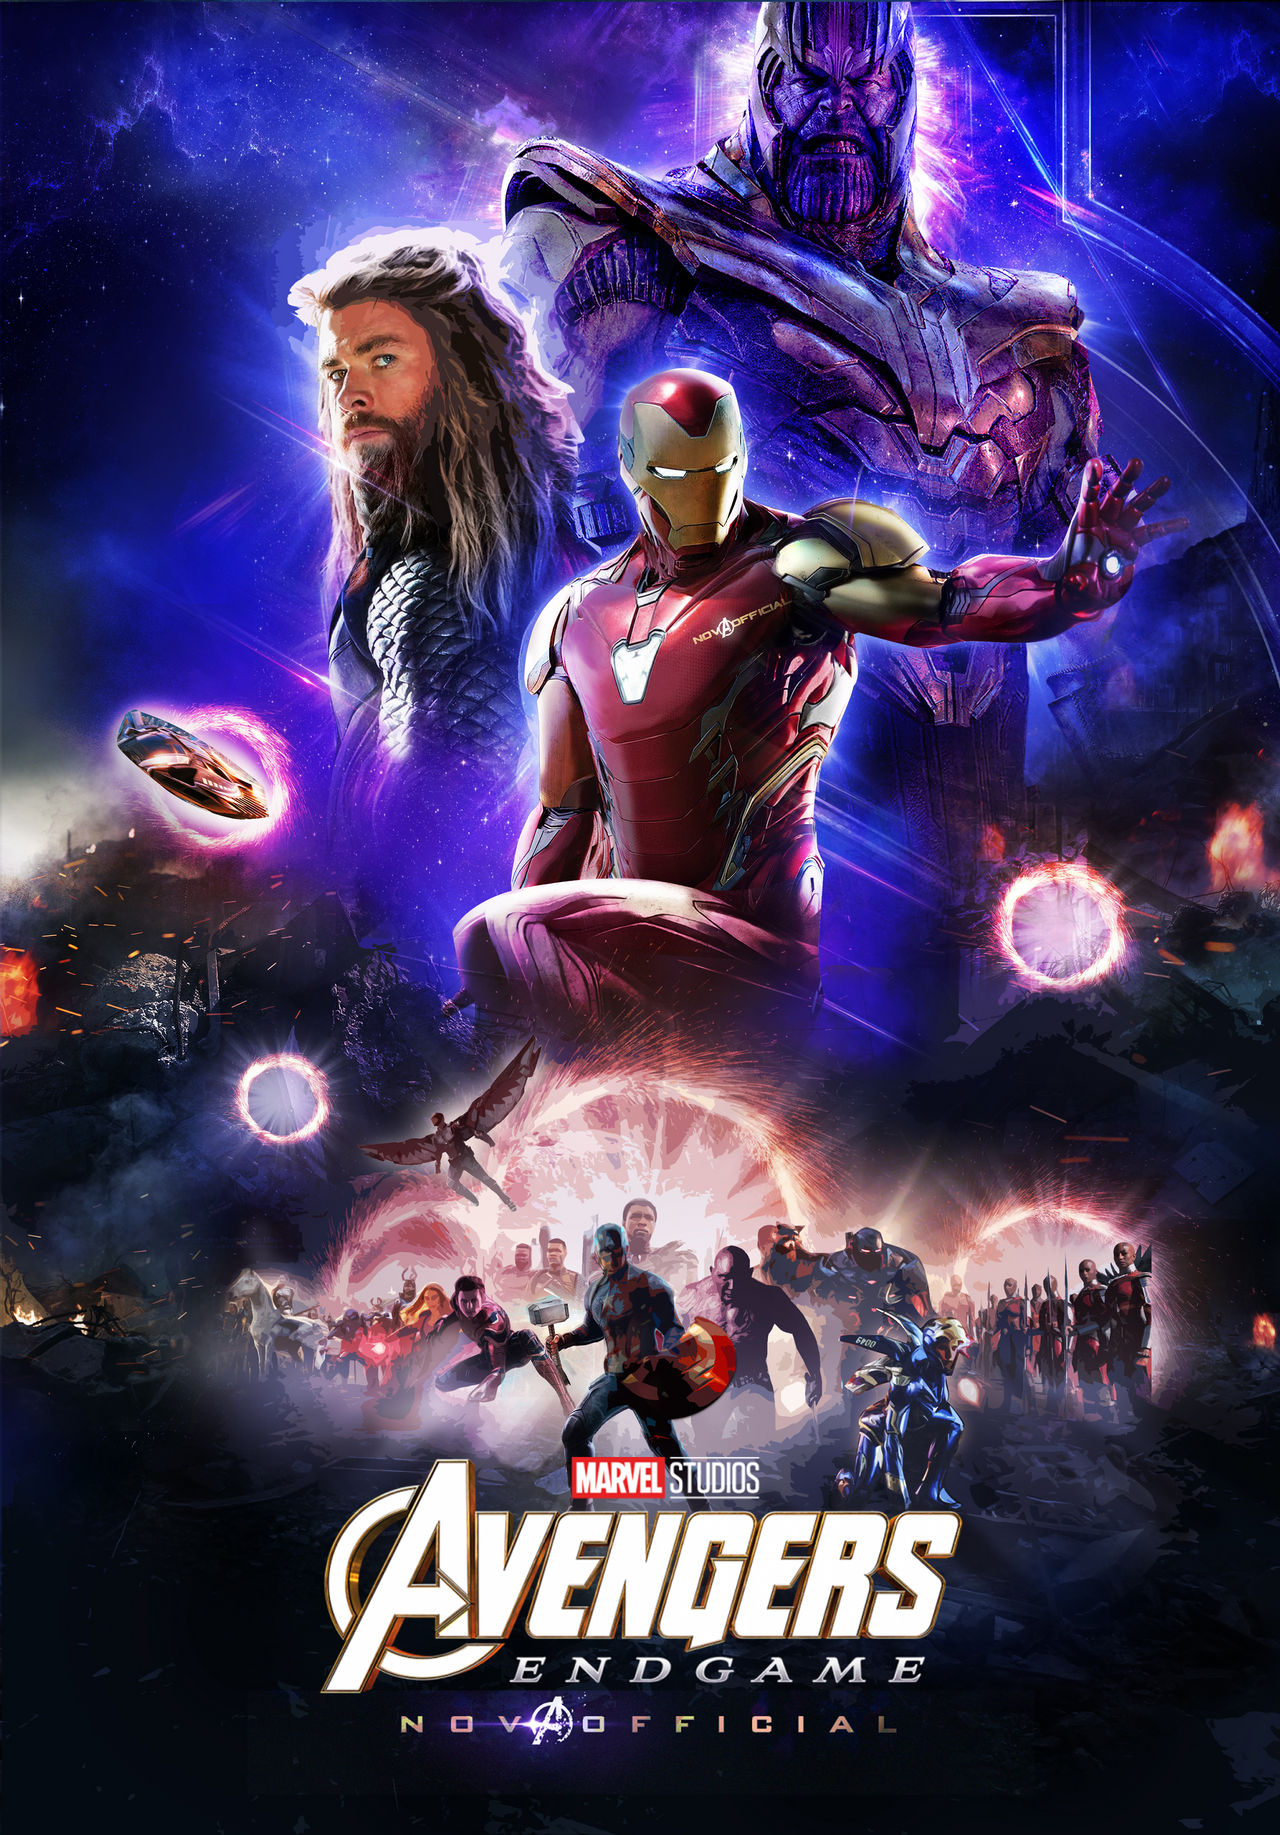 Avenge Us - Avengers Endgame Poster by   on @DeviantArt